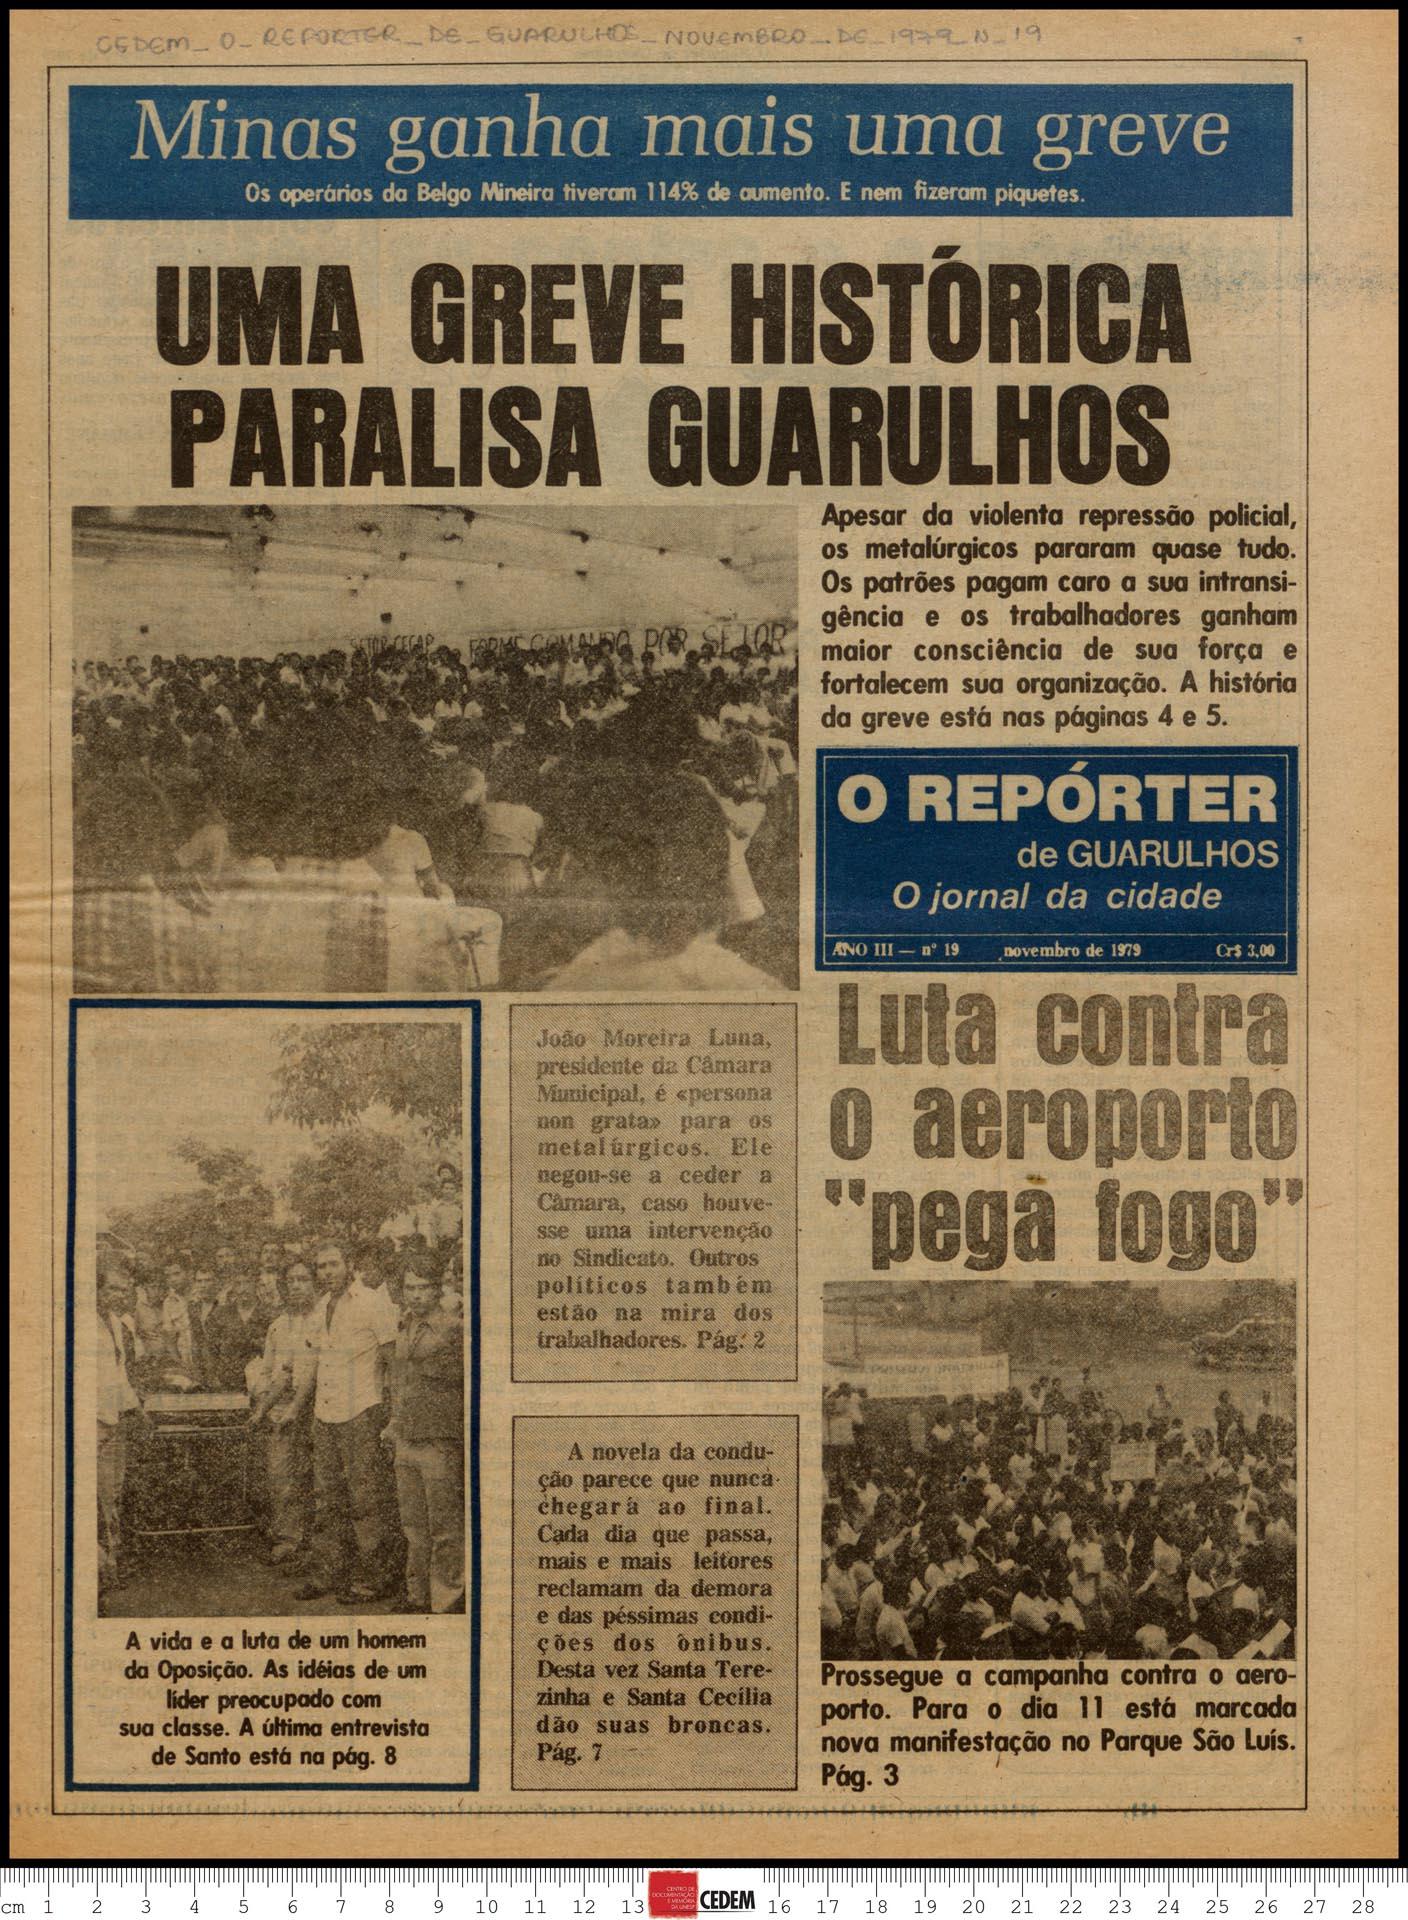 O reportér de Guarulhos - 19 - nov. 1979